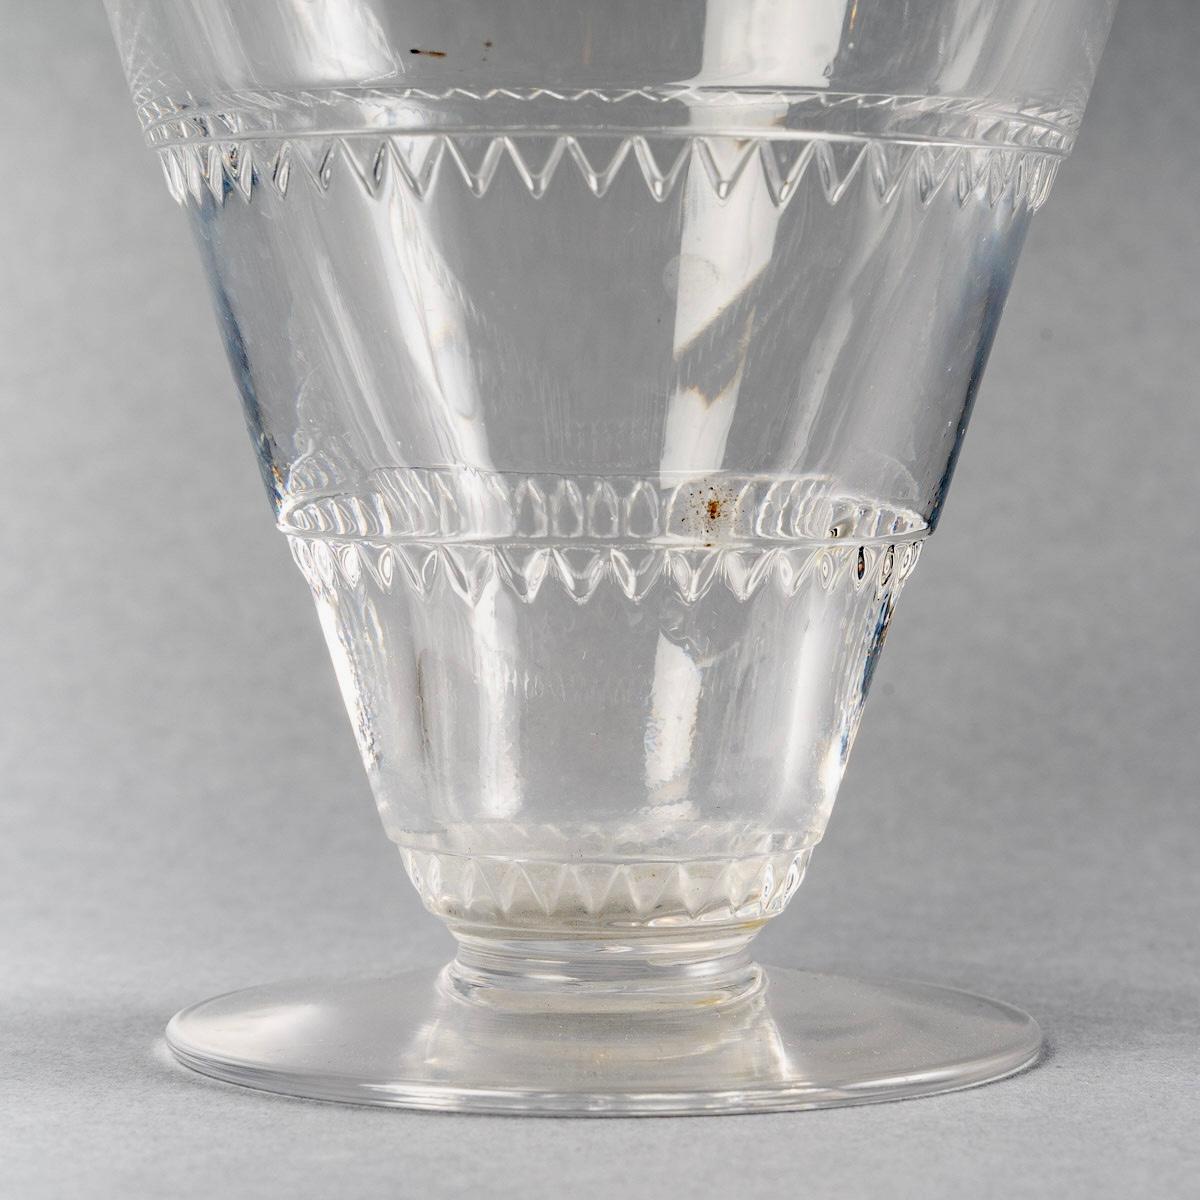 1932 René Lalique Set of Glasses Decanter Pitcher Vouvray Clear Glass 42 Pieces 2